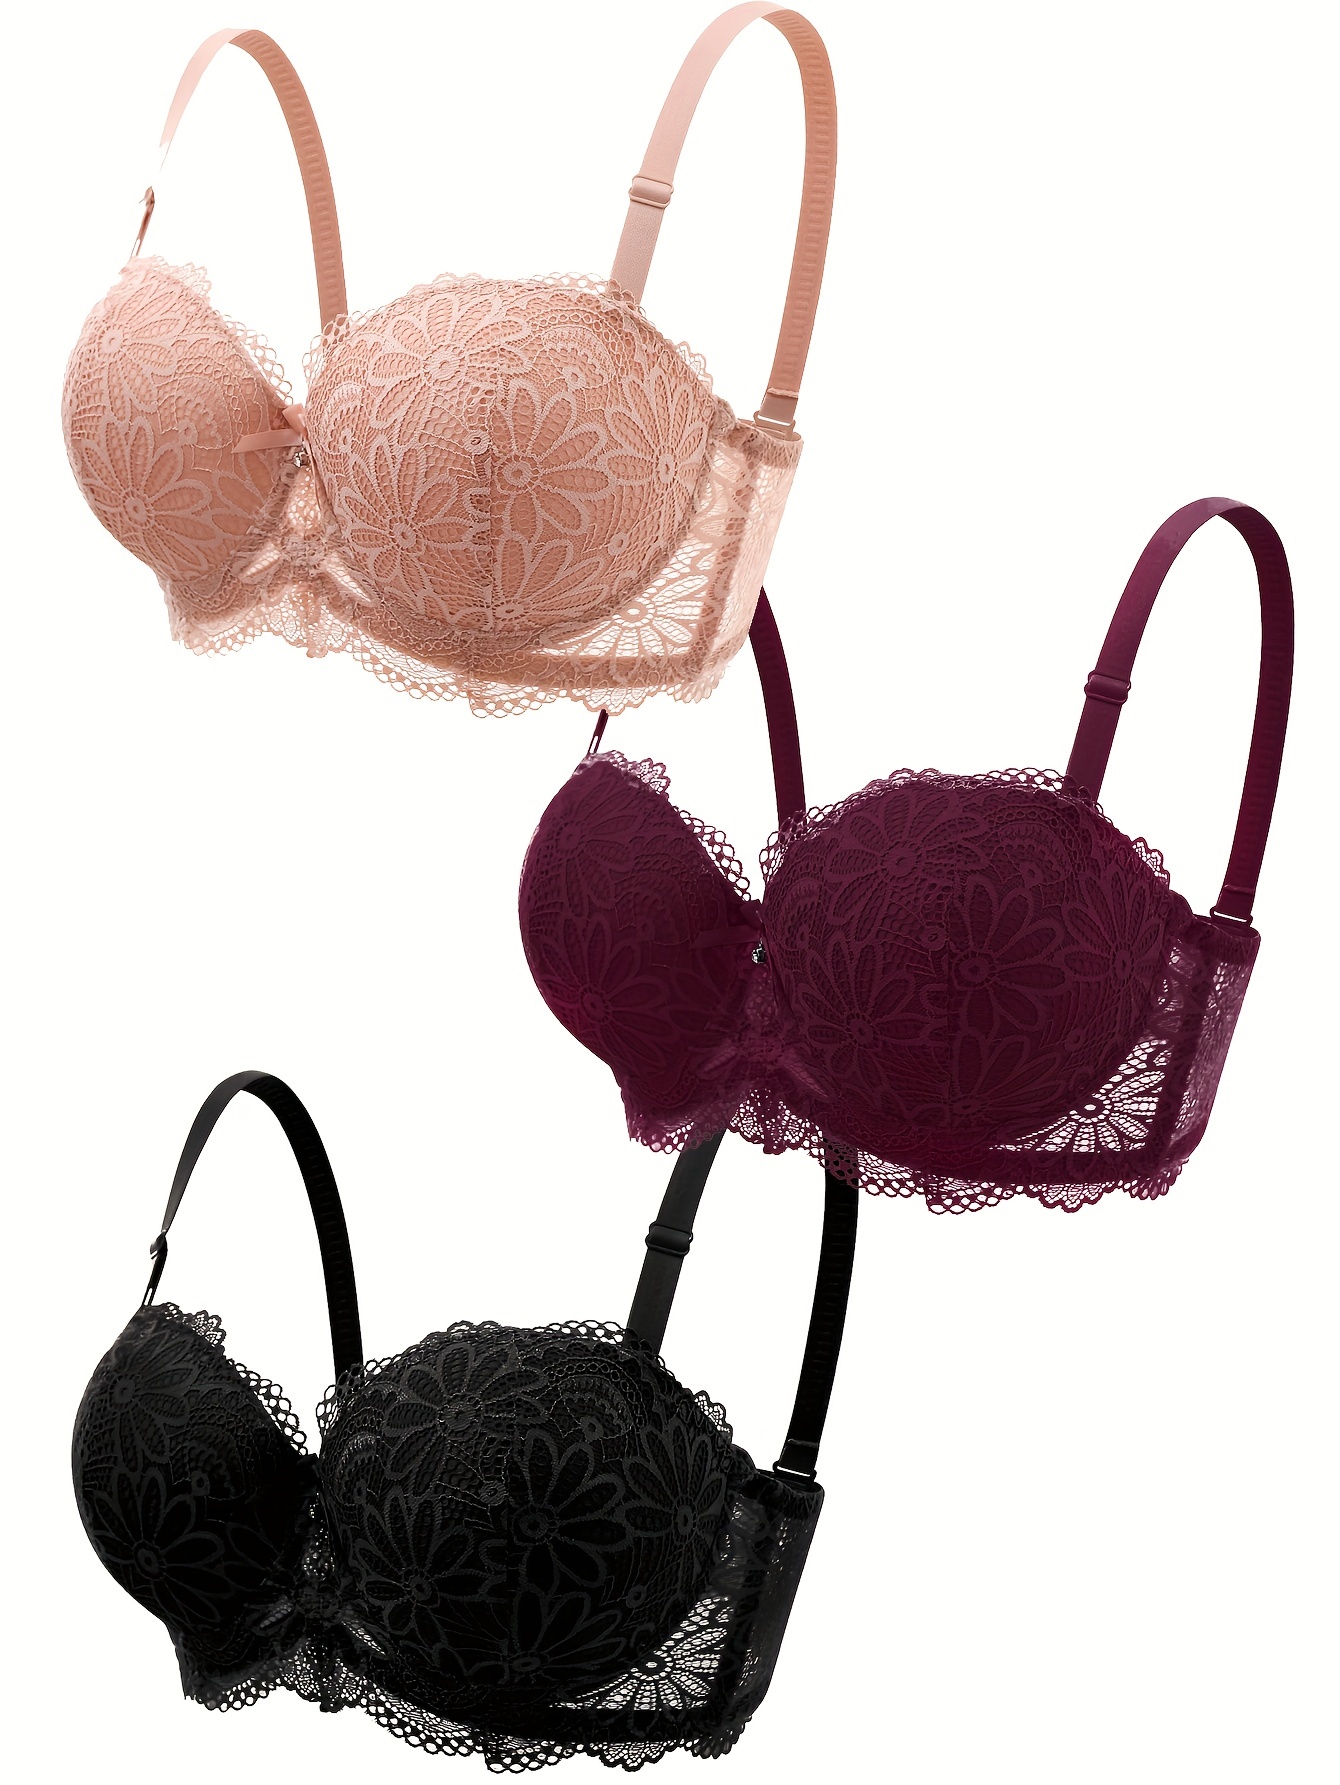 5pcs Contrast Lace Push Up Bras, Comfy & Breathable Intimates Bra, Women's  Lingerie & Underwear